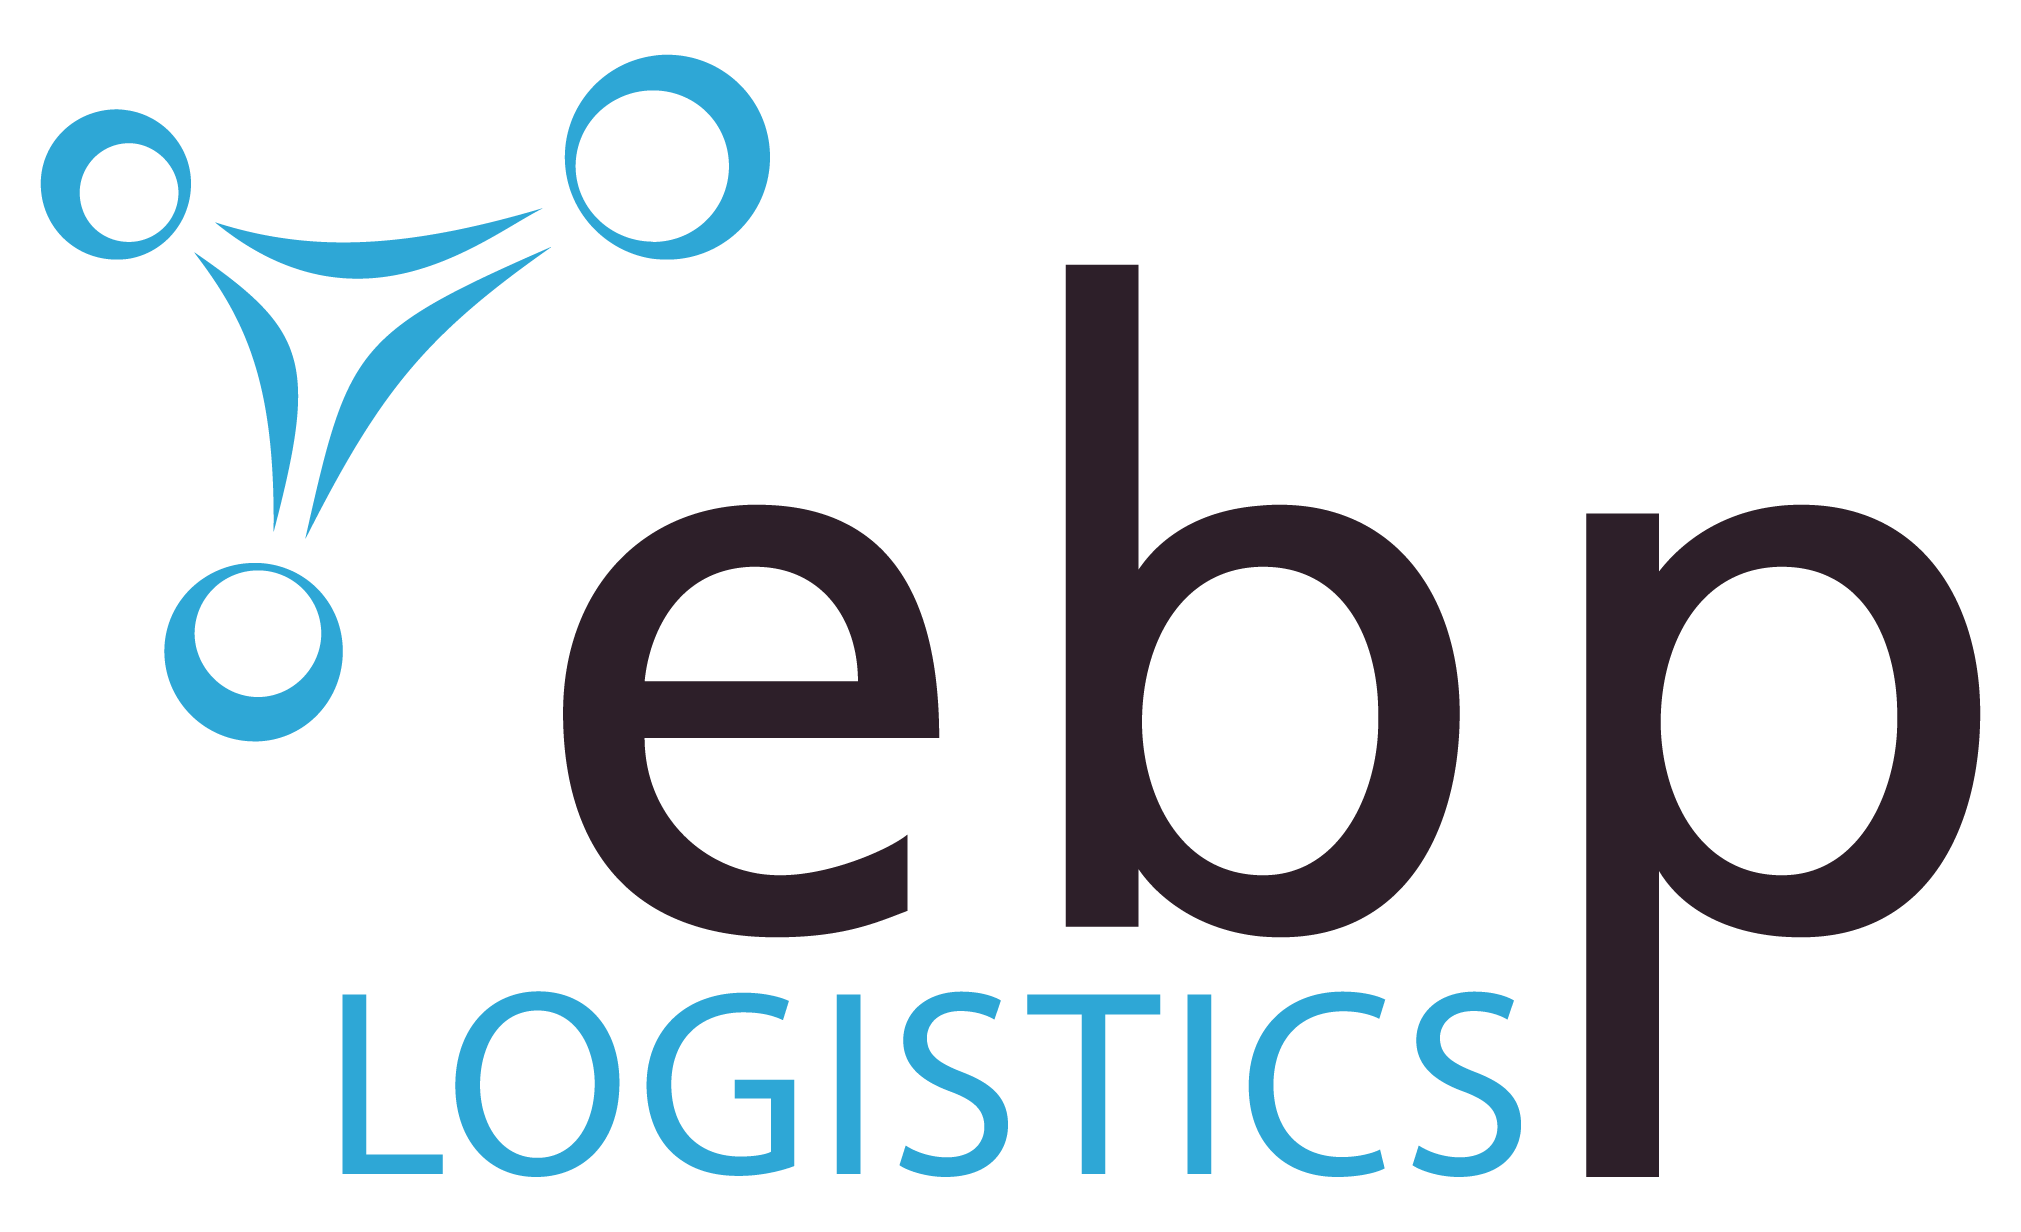 Mit ebp-logistics rundet ebp-consulting Ihr Angebot in der Logistik ab.